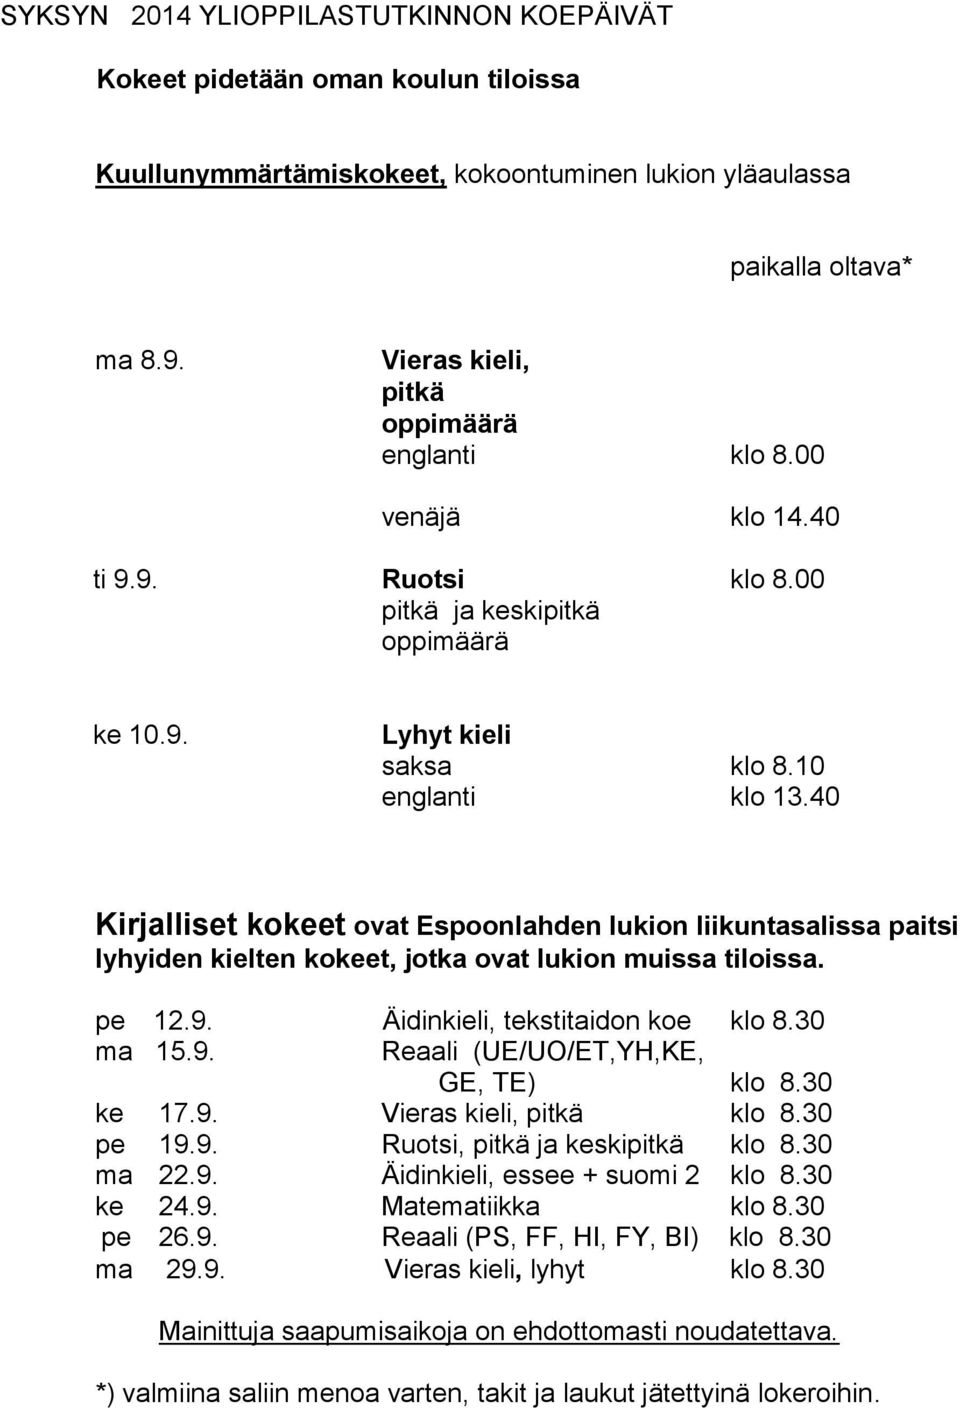 40 Kirjalliset kokeet ovat Espoonlahden lukion liikuntasalissa paitsi lyhyiden kielten kokeet, jotka ovat lukion muissa tiloissa. pe 12.9. Äidinkieli, tekstitaidon koe klo 8.30 ma 15.9. Reaali (UE/UO/ET,YH,KE, GE, TE) klo 8.